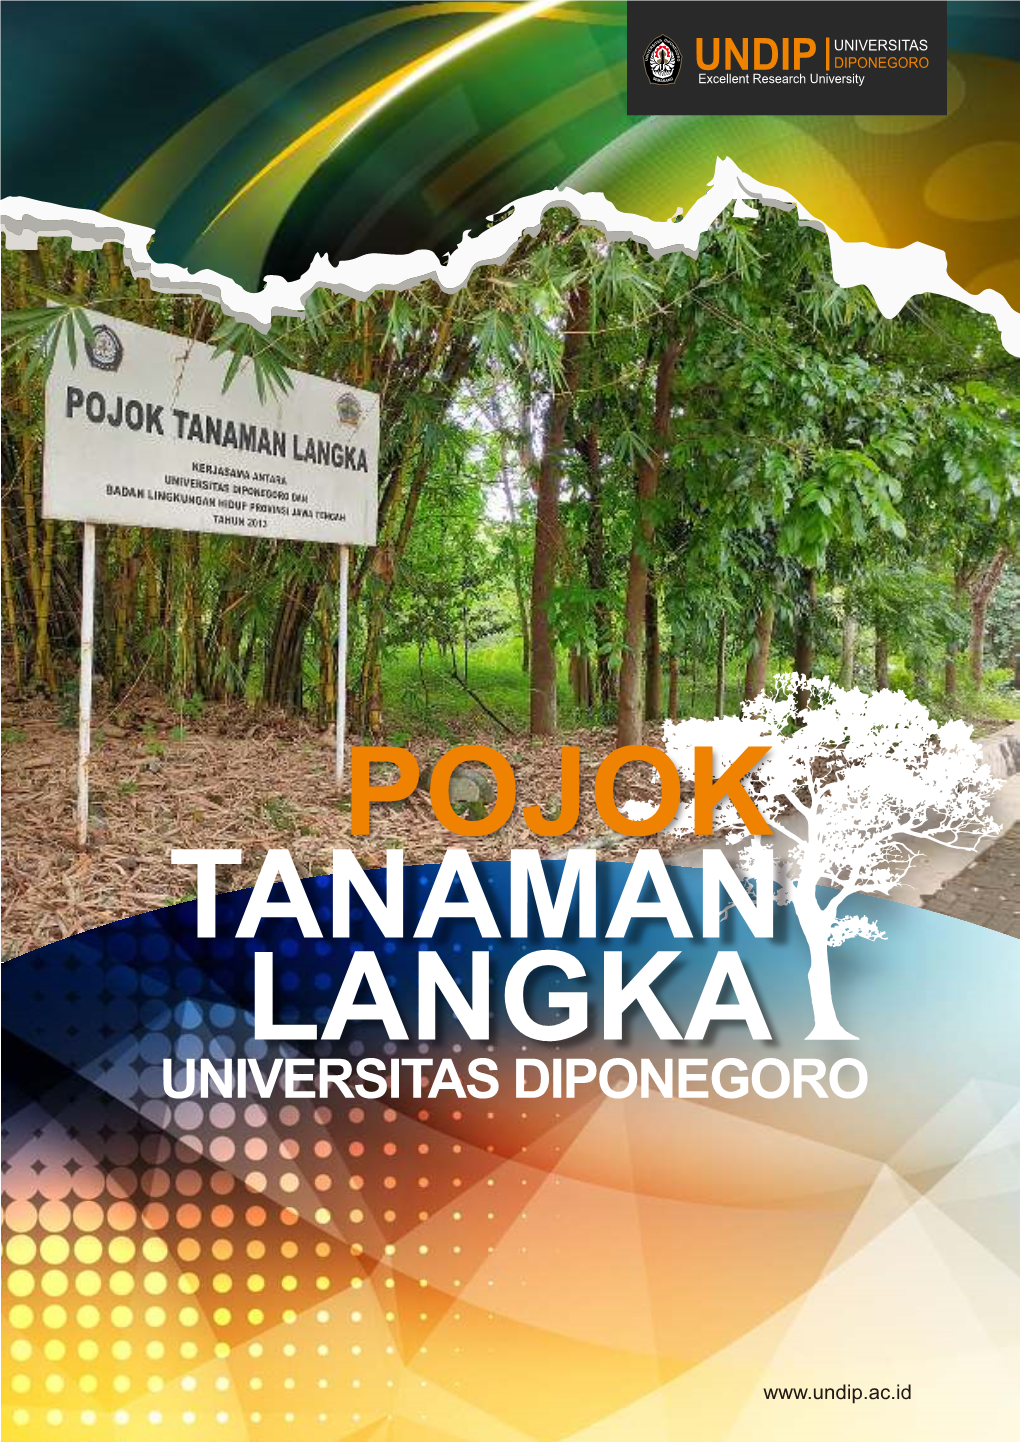 Pojok Tanaman Langka Universitas Diponegoro